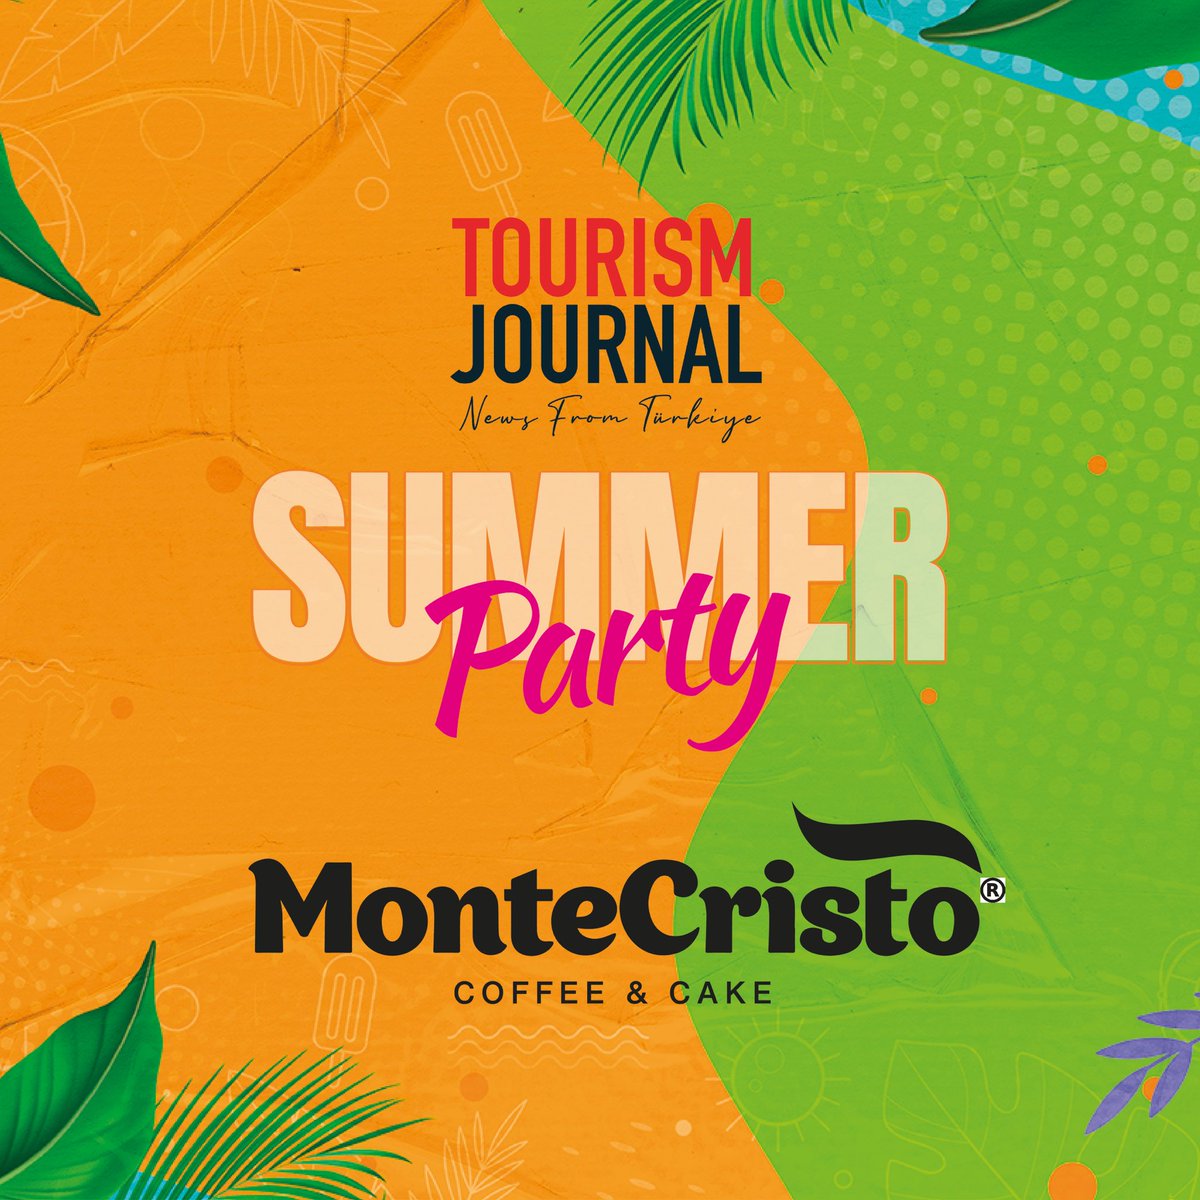 #TourismJournalSummerParty’de bizlere sponsor olarak eşlik eden Monte Cristo Coffee & Cake’e teşekkür ediyoruz.

#MonteCristoCoffeeCake #SummerParty #Antalya